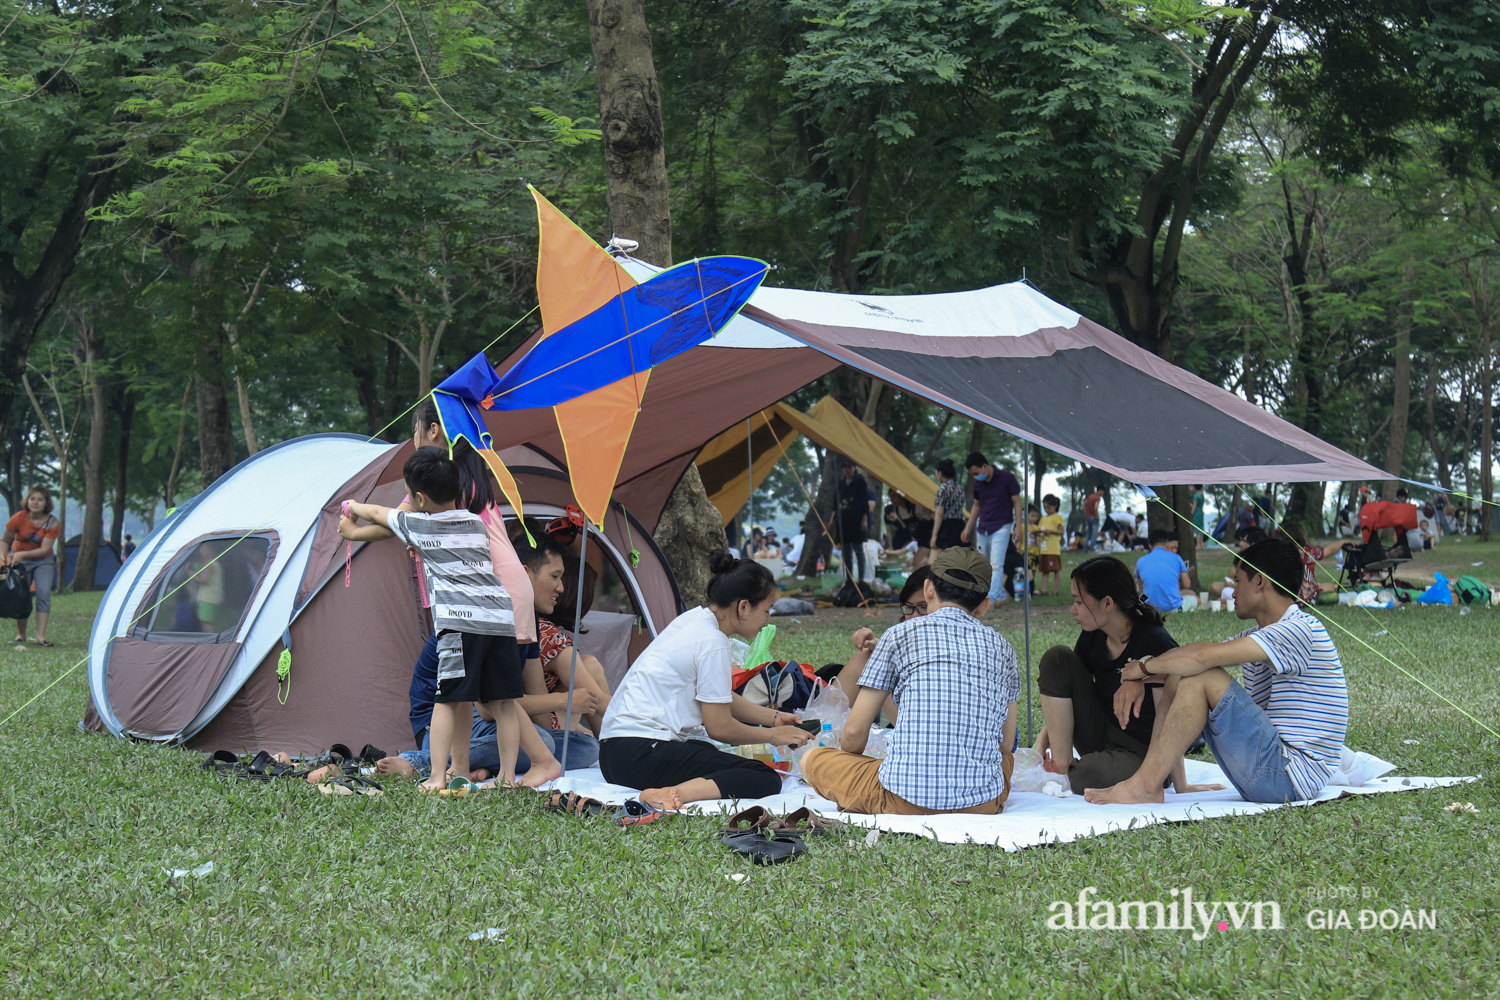 Công viên Yên Sở đông nghịt người cắm trại, vui chơi ngày nghỉ lễ - Ảnh 1.